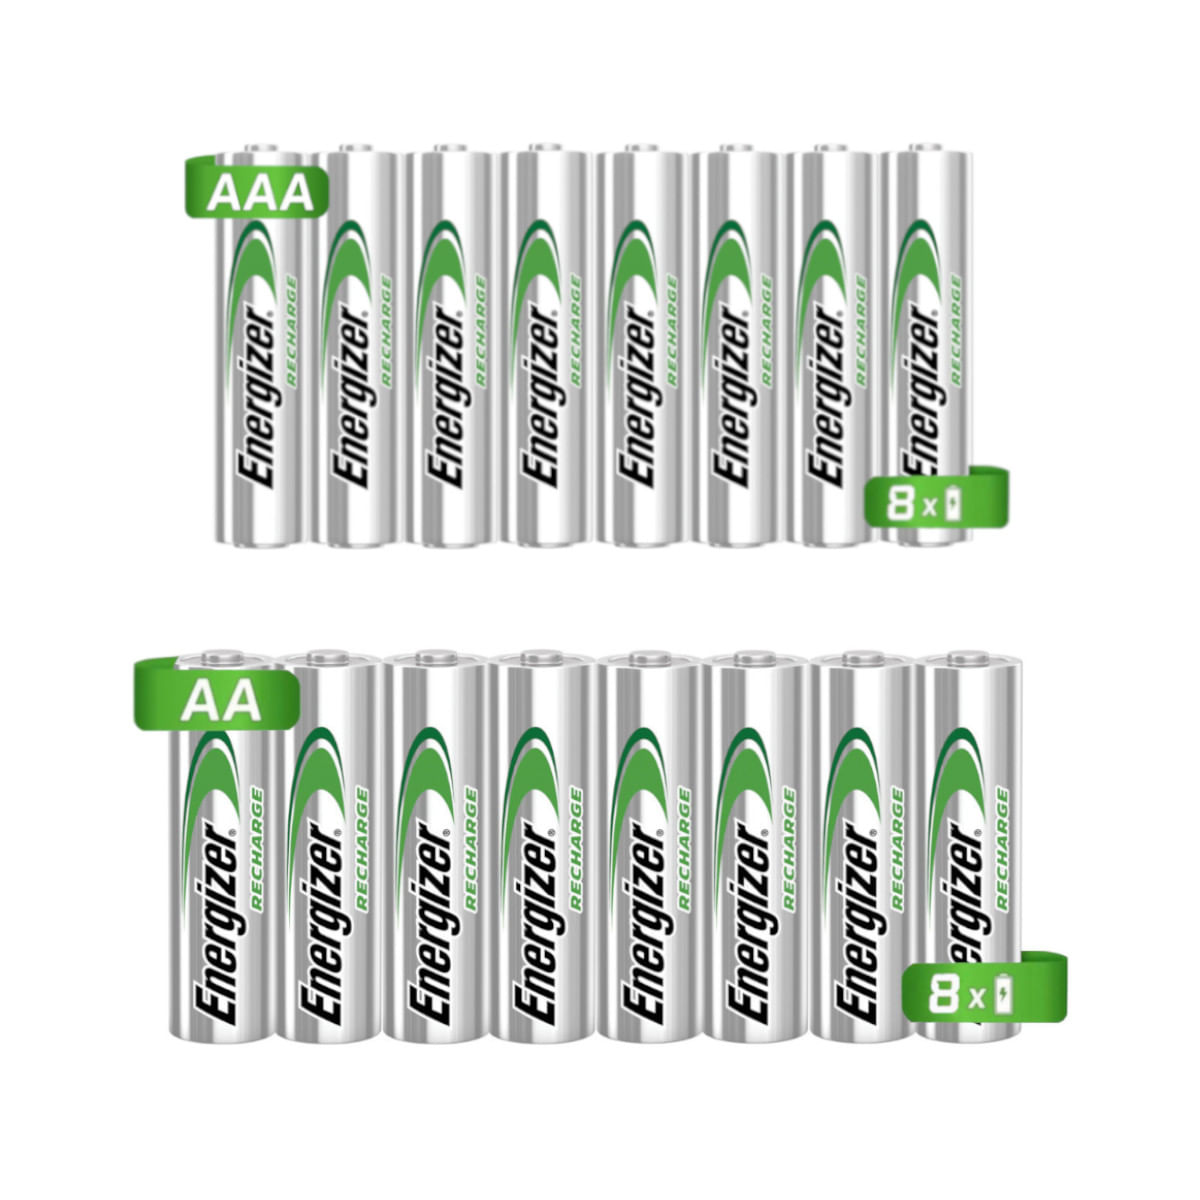 16 Pilas Baterías Recargables Energizer Tamaño 8 AAA y 8 AA